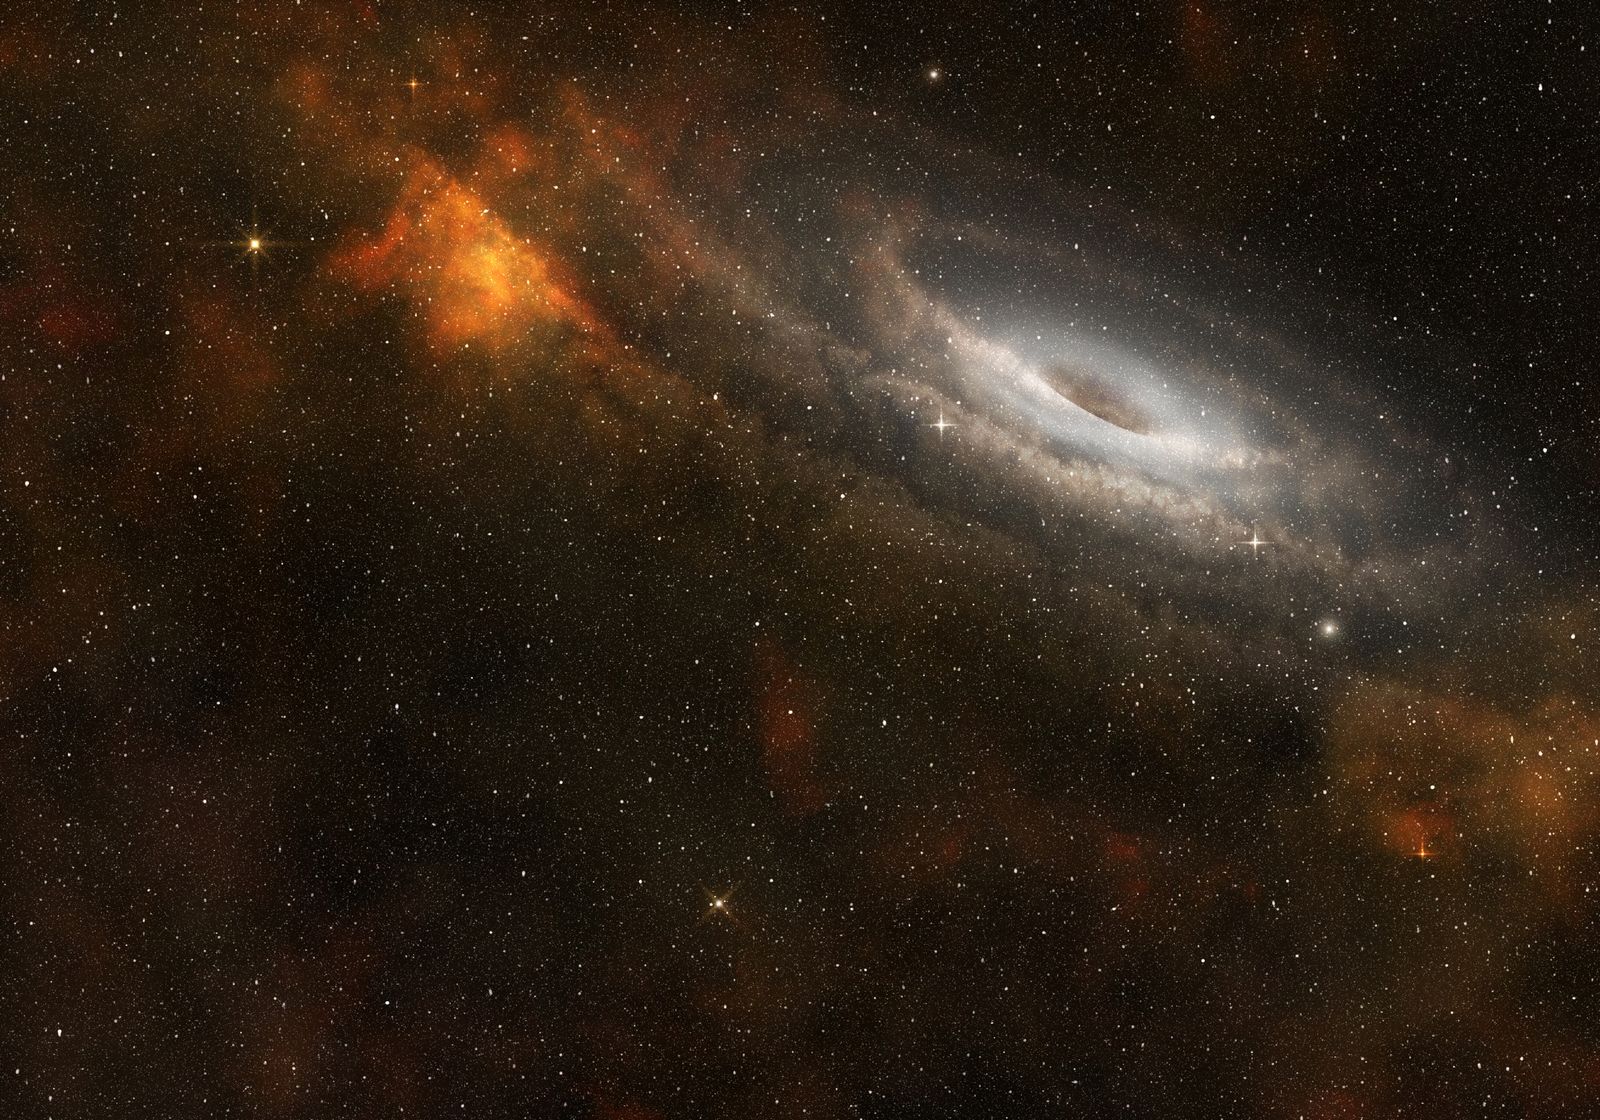 αποκαλύφθηκε η παλαιότερη μαύρη τρύπα που έχει παρατηρηθεί ποτέ